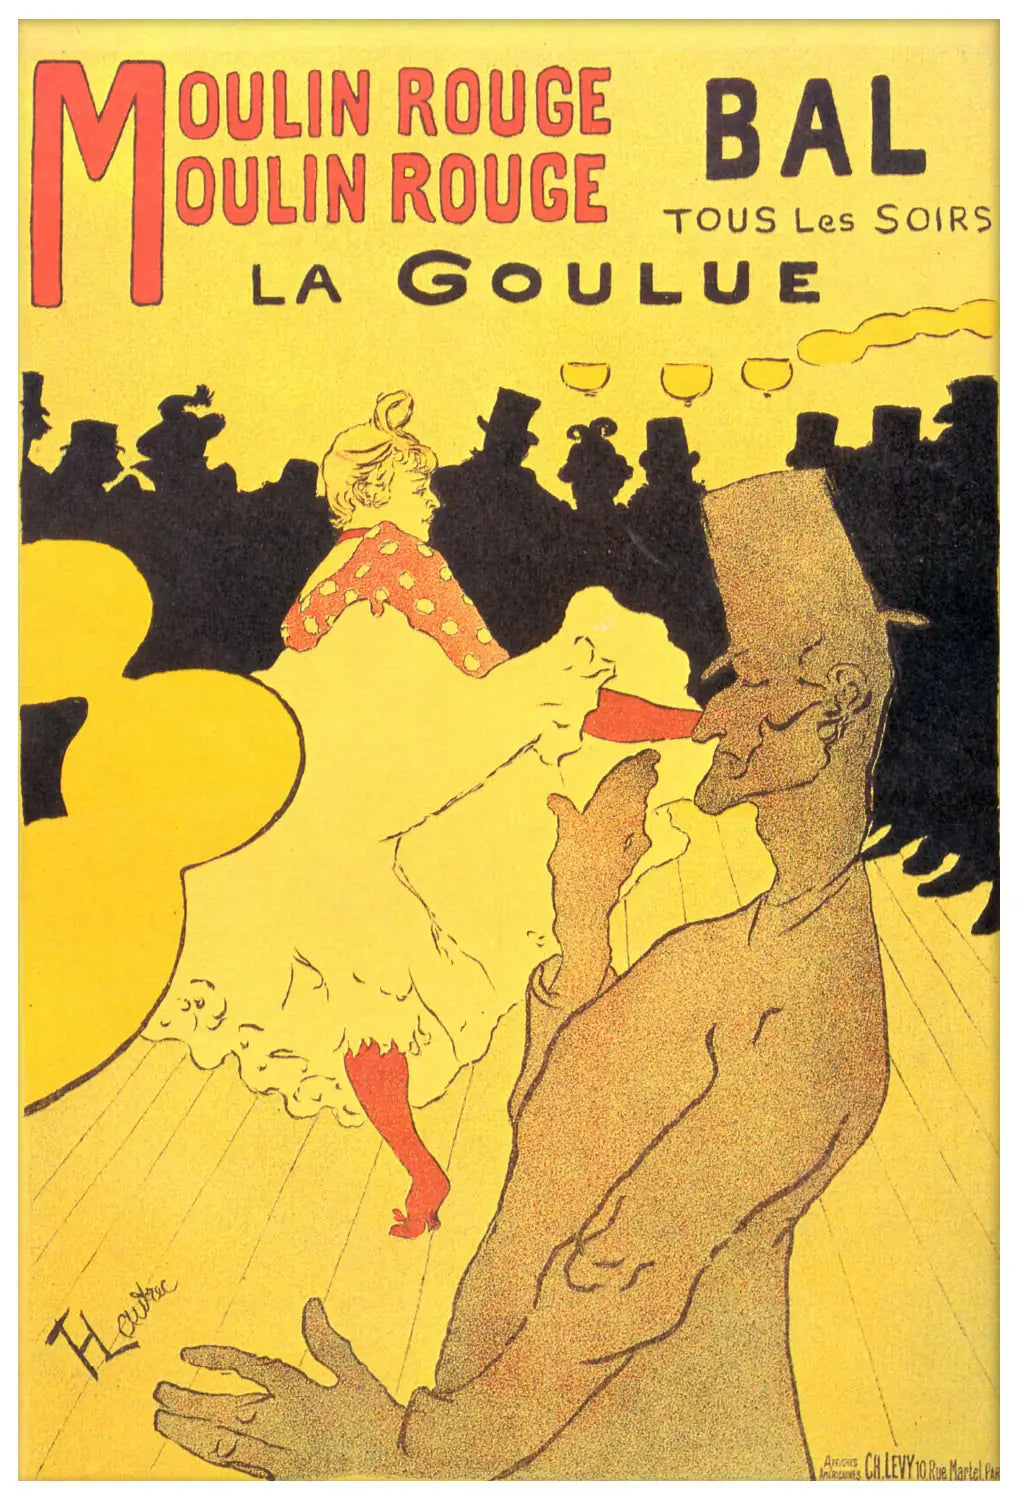 Toulouse-Lautrec "Moulin-Rouge - La Goulue"